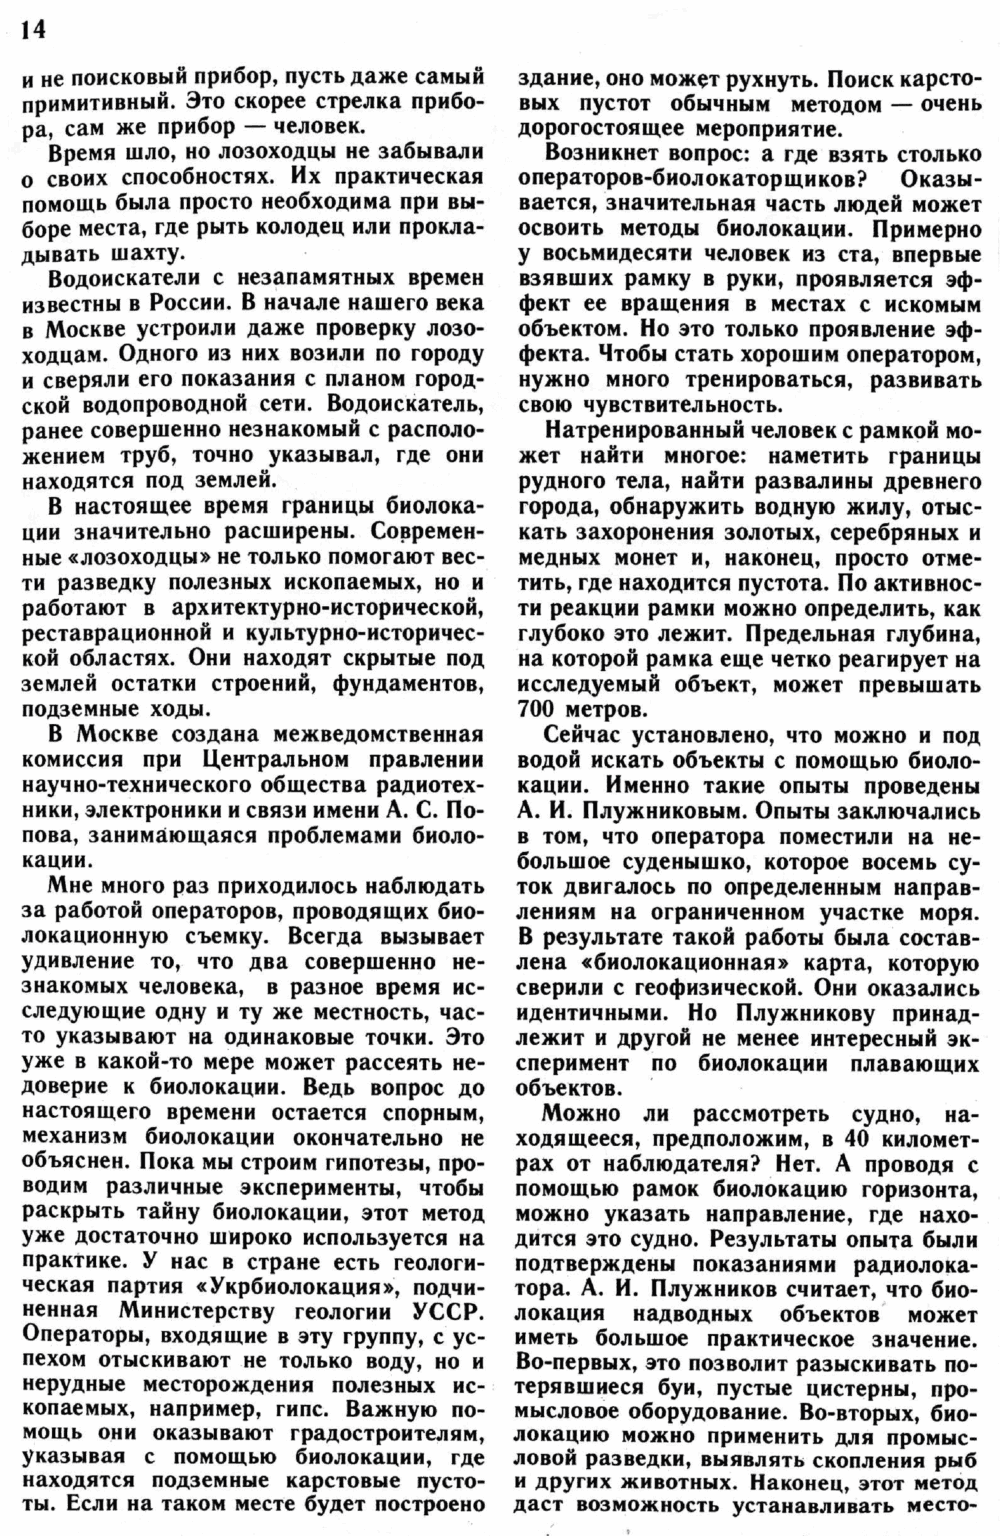 Загадки биолокации. Ю. Симаков. Юный натуралист, 1989, №1, с.12-15. Фотокопия №3